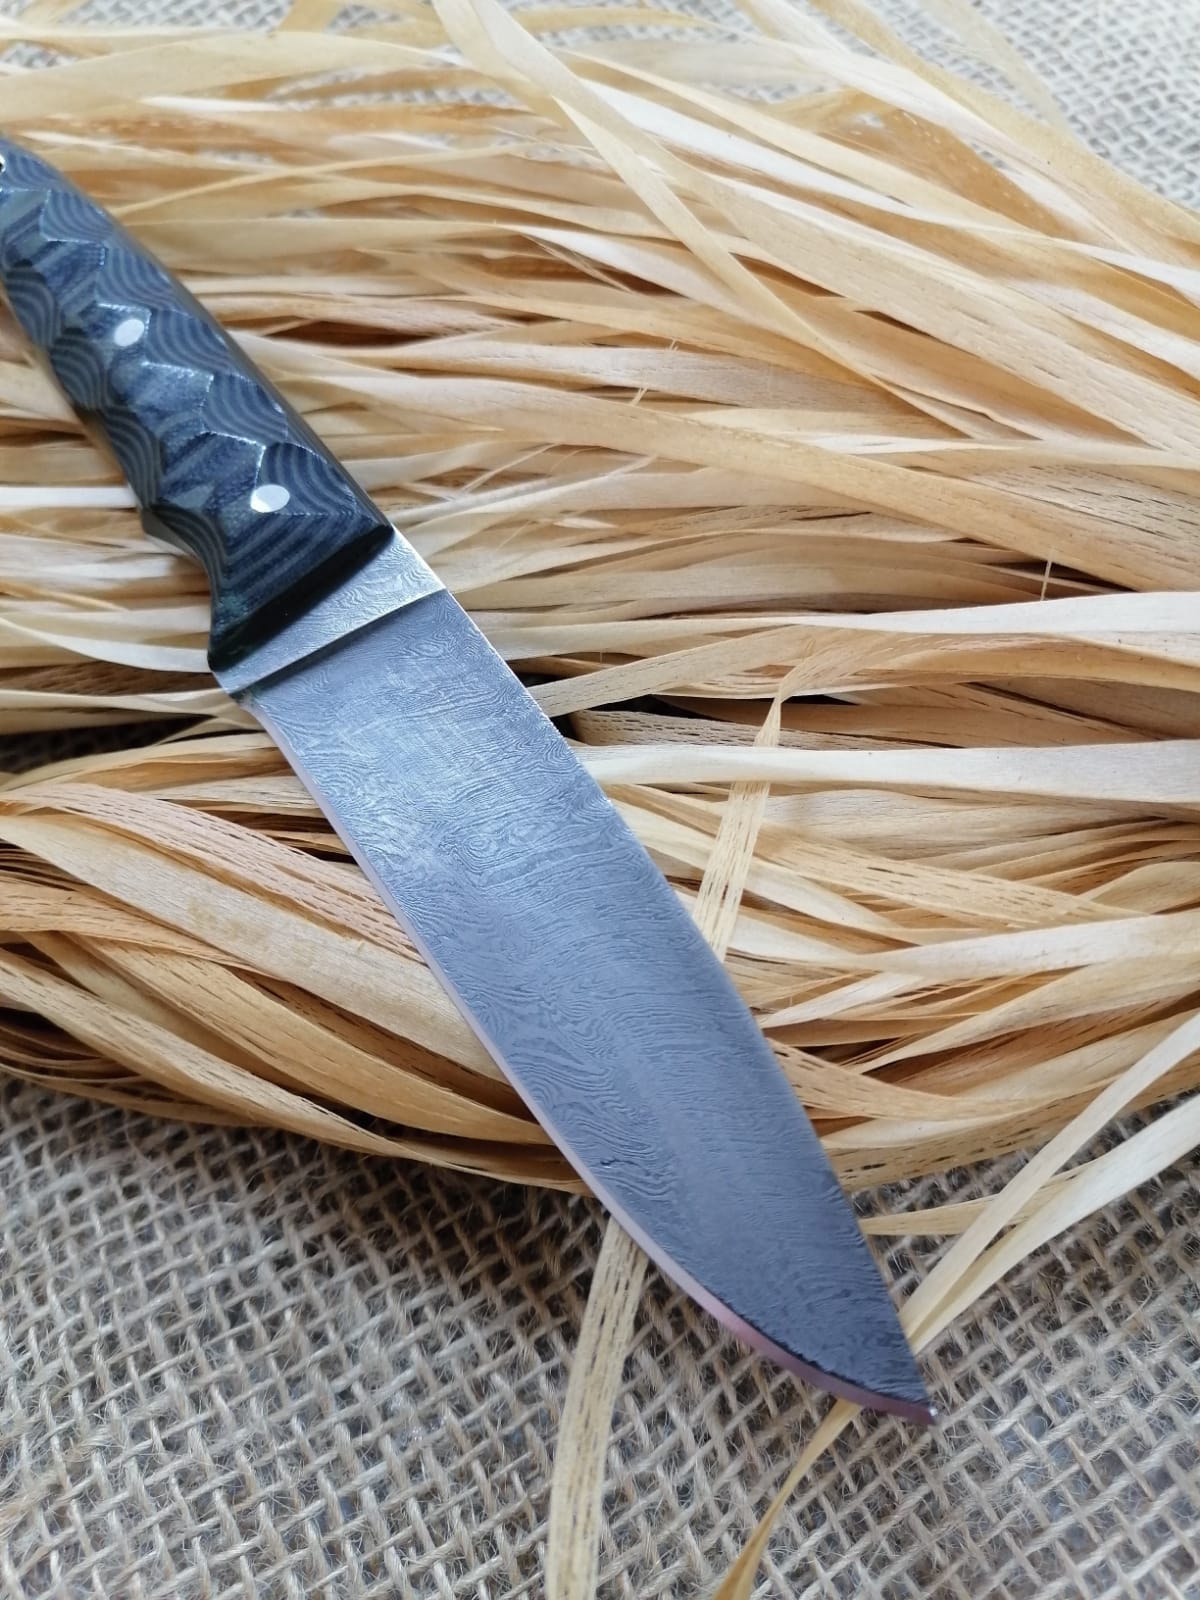 Full Hunting Knife "Needle" of Damascus